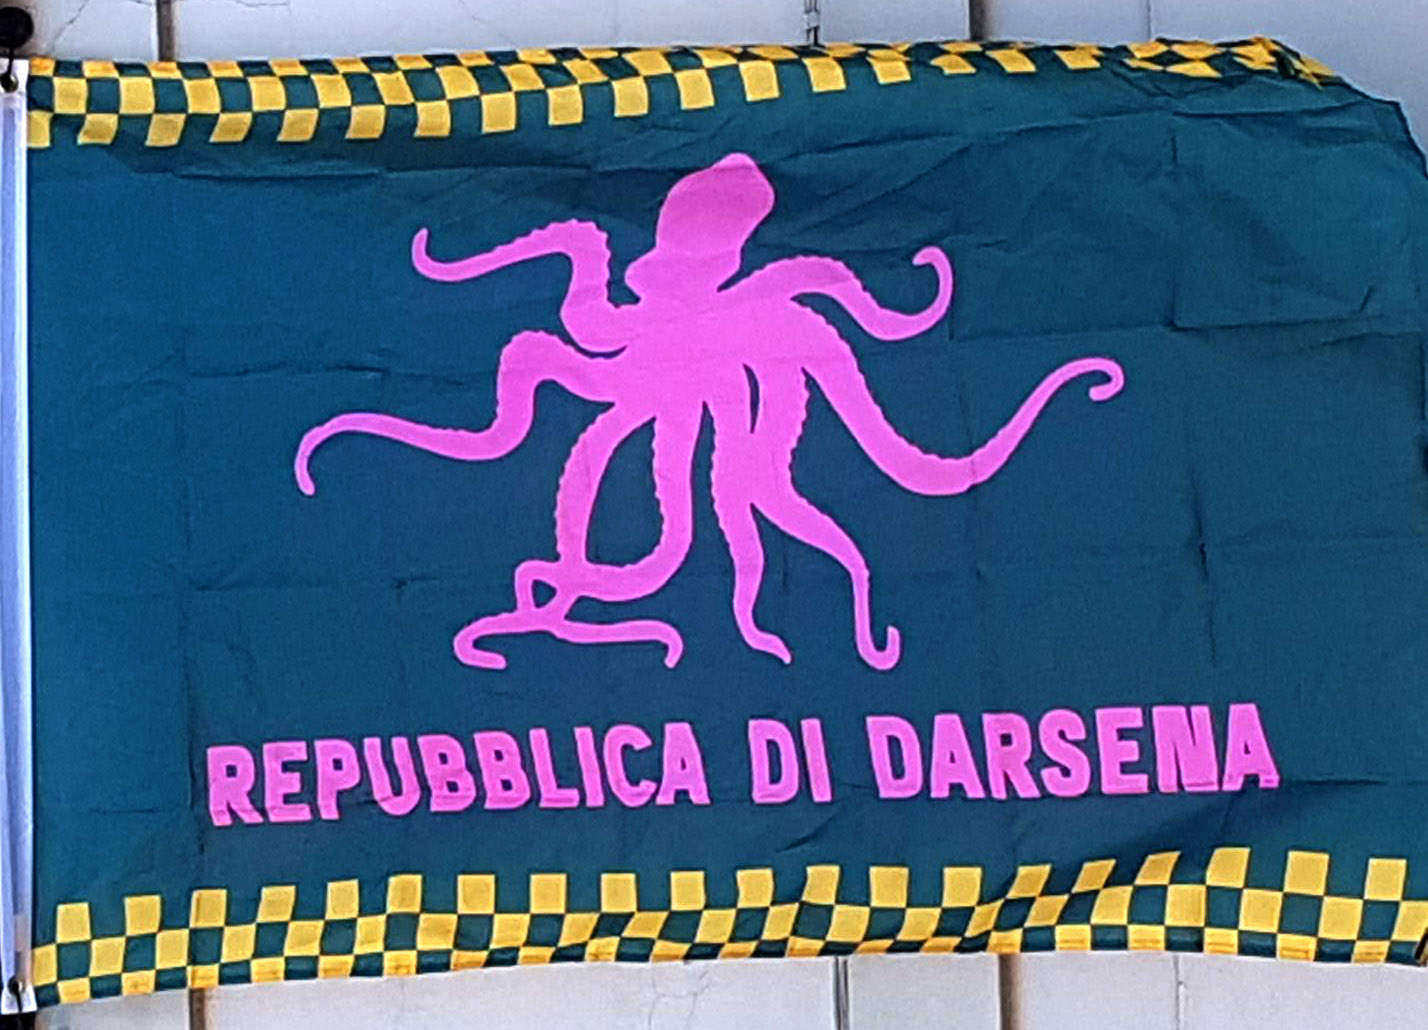 Carnevaldarsena, con le nuove bandiere vintage c’è un ritorno alle origini del Polpo